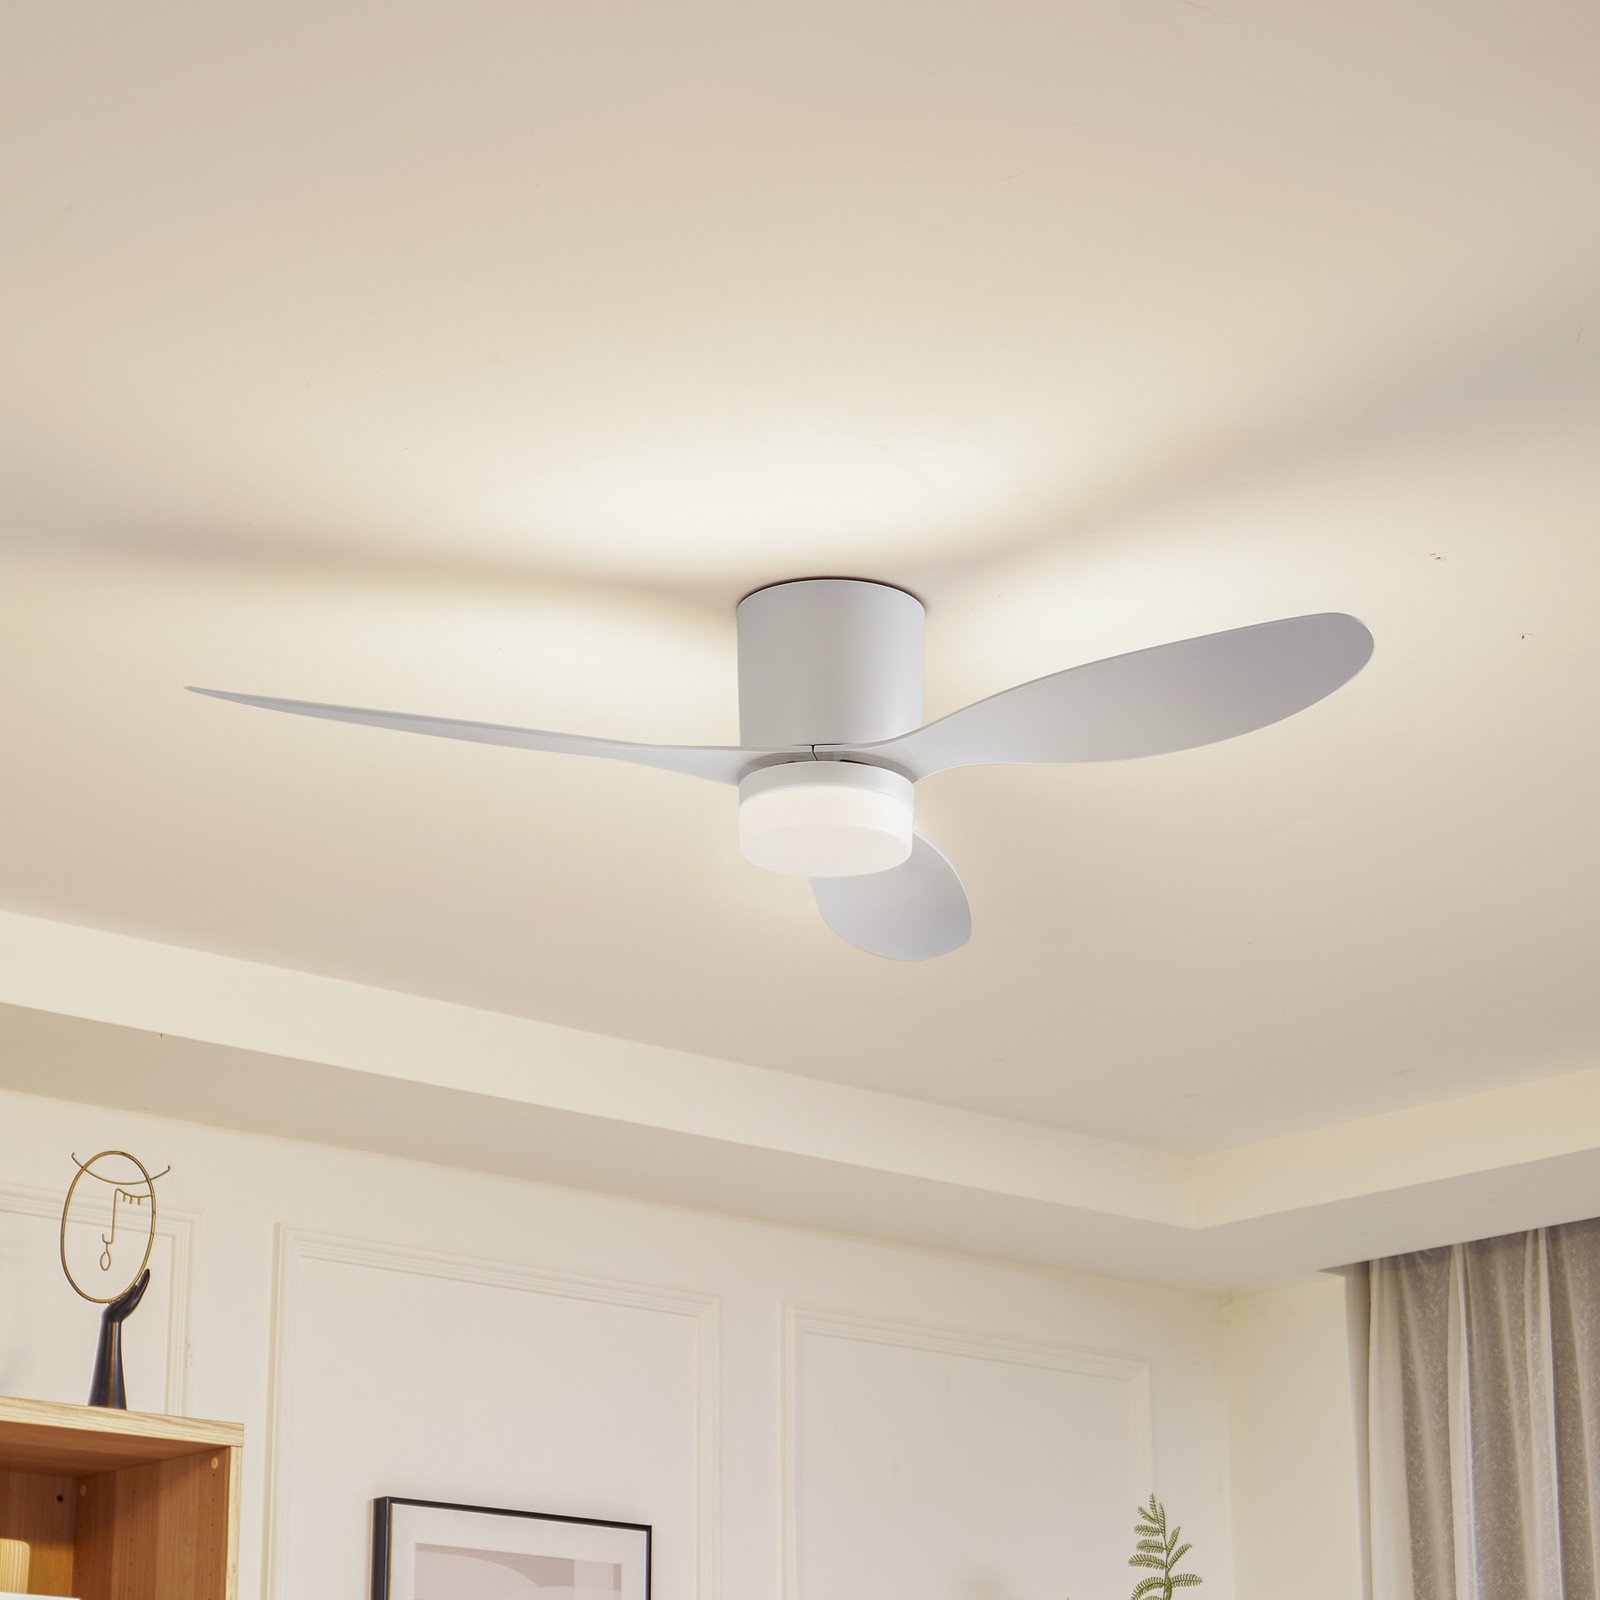 Lucande LED ceiling fan Kayu, white, DC, quiet, Ø 132 cm